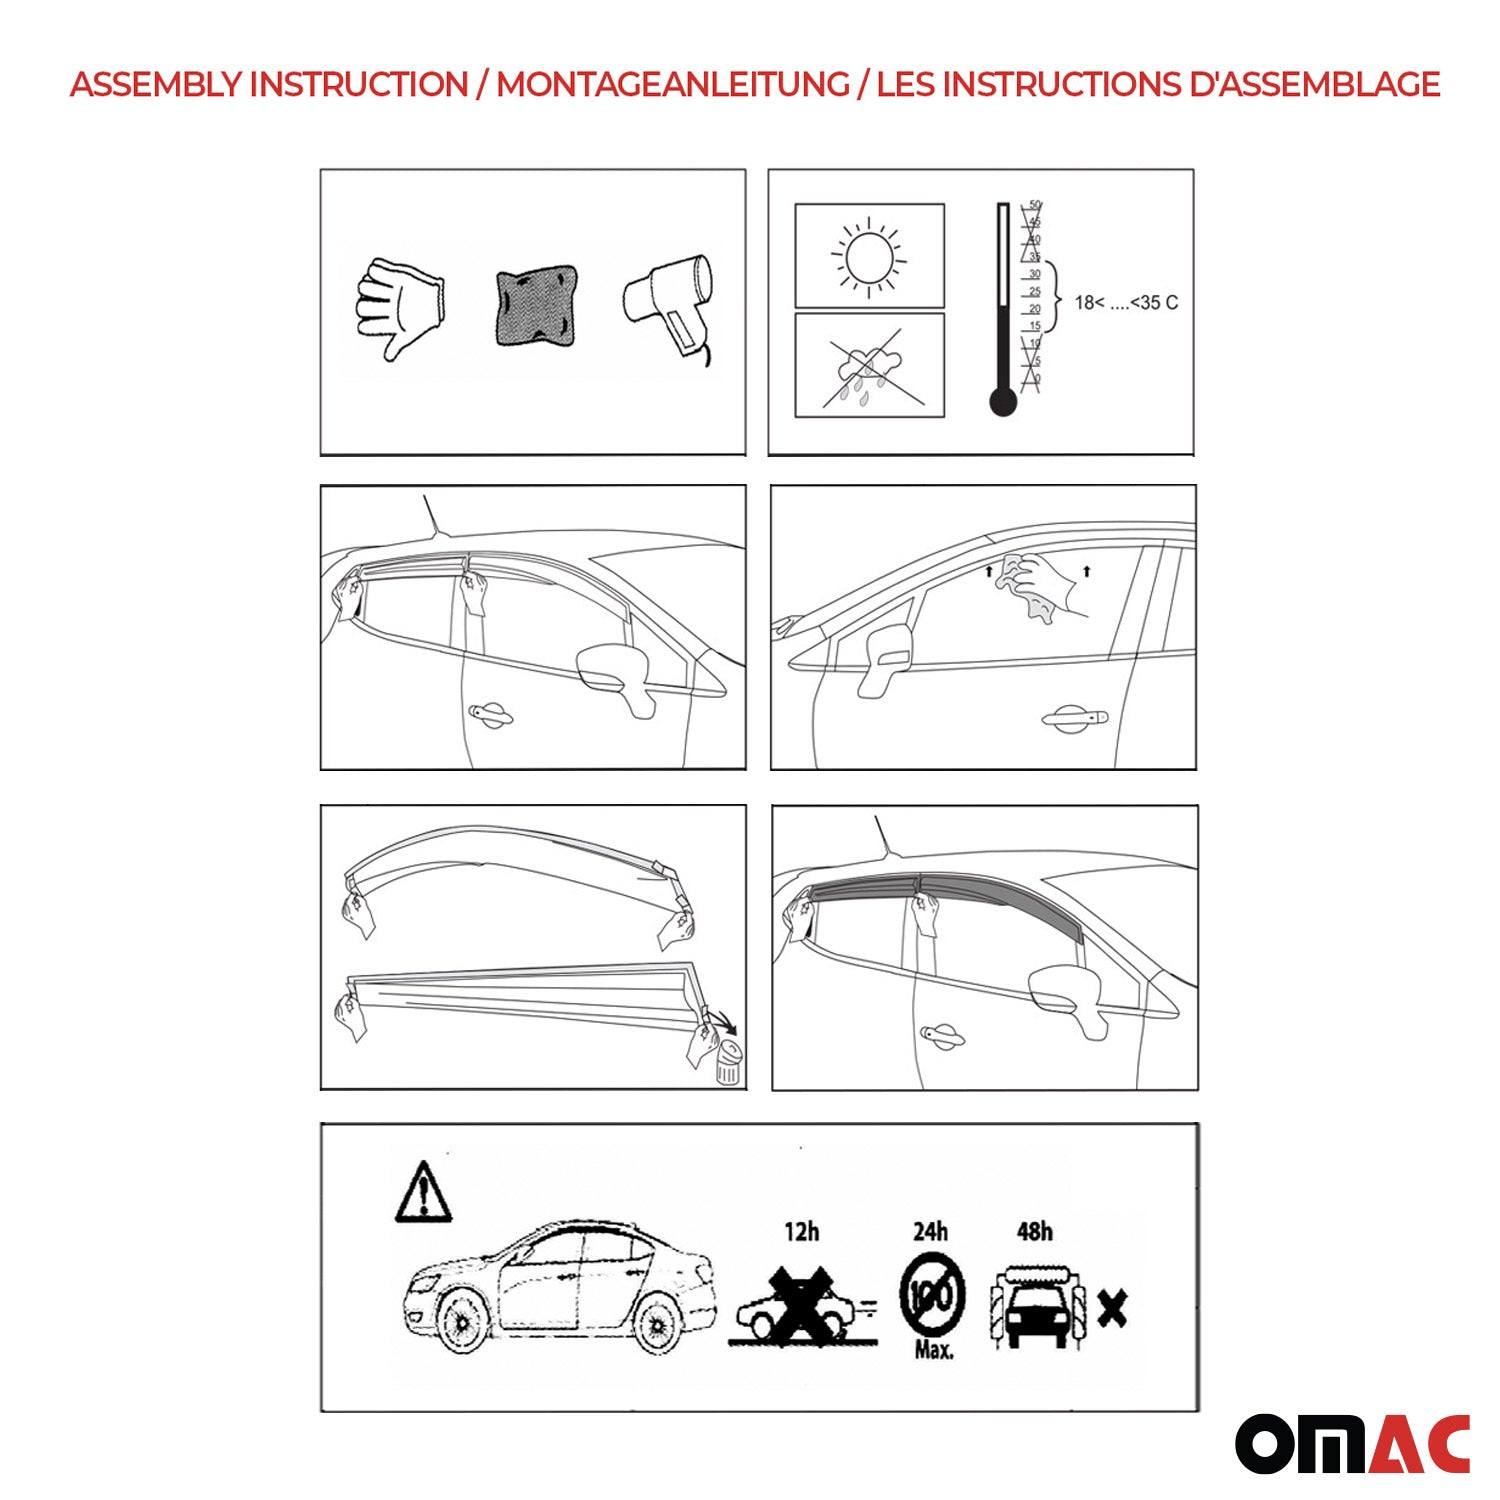 Déflecteurs de Vent pluie d'air pour Opel Corsa D 2006-2015 HB Acrylique Noir 4x